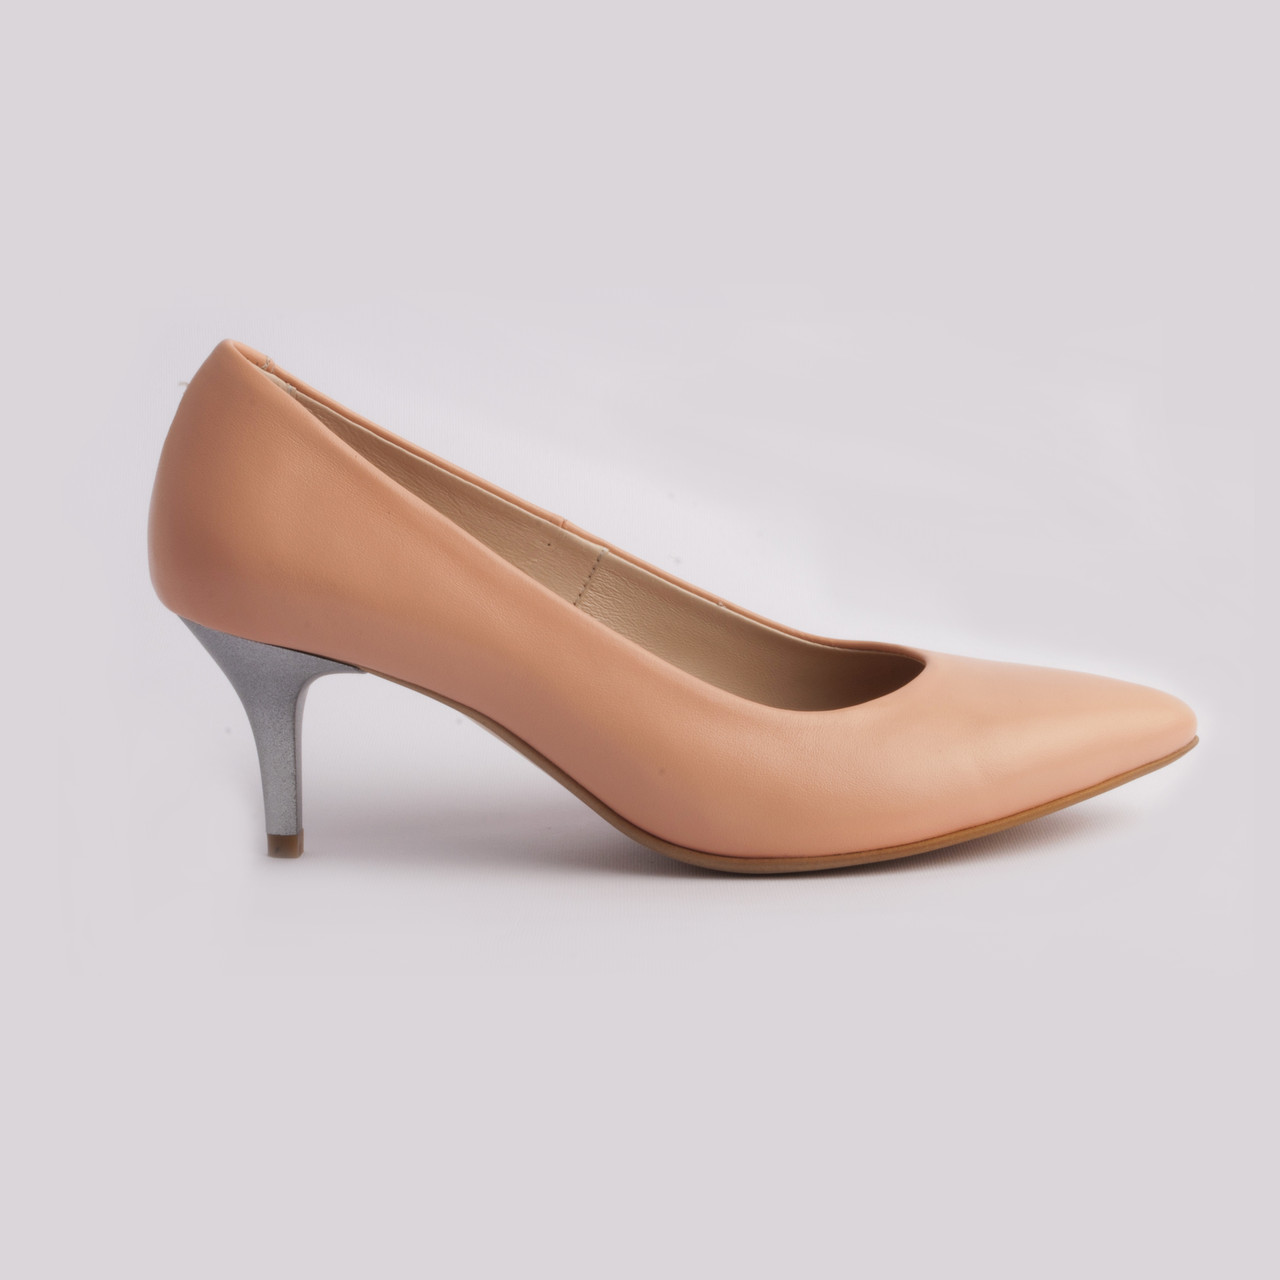 Класичні туфлі шкіряні 36 розмір Woman's heel персикові з загостреним носком на низькому каблуці, фото 1